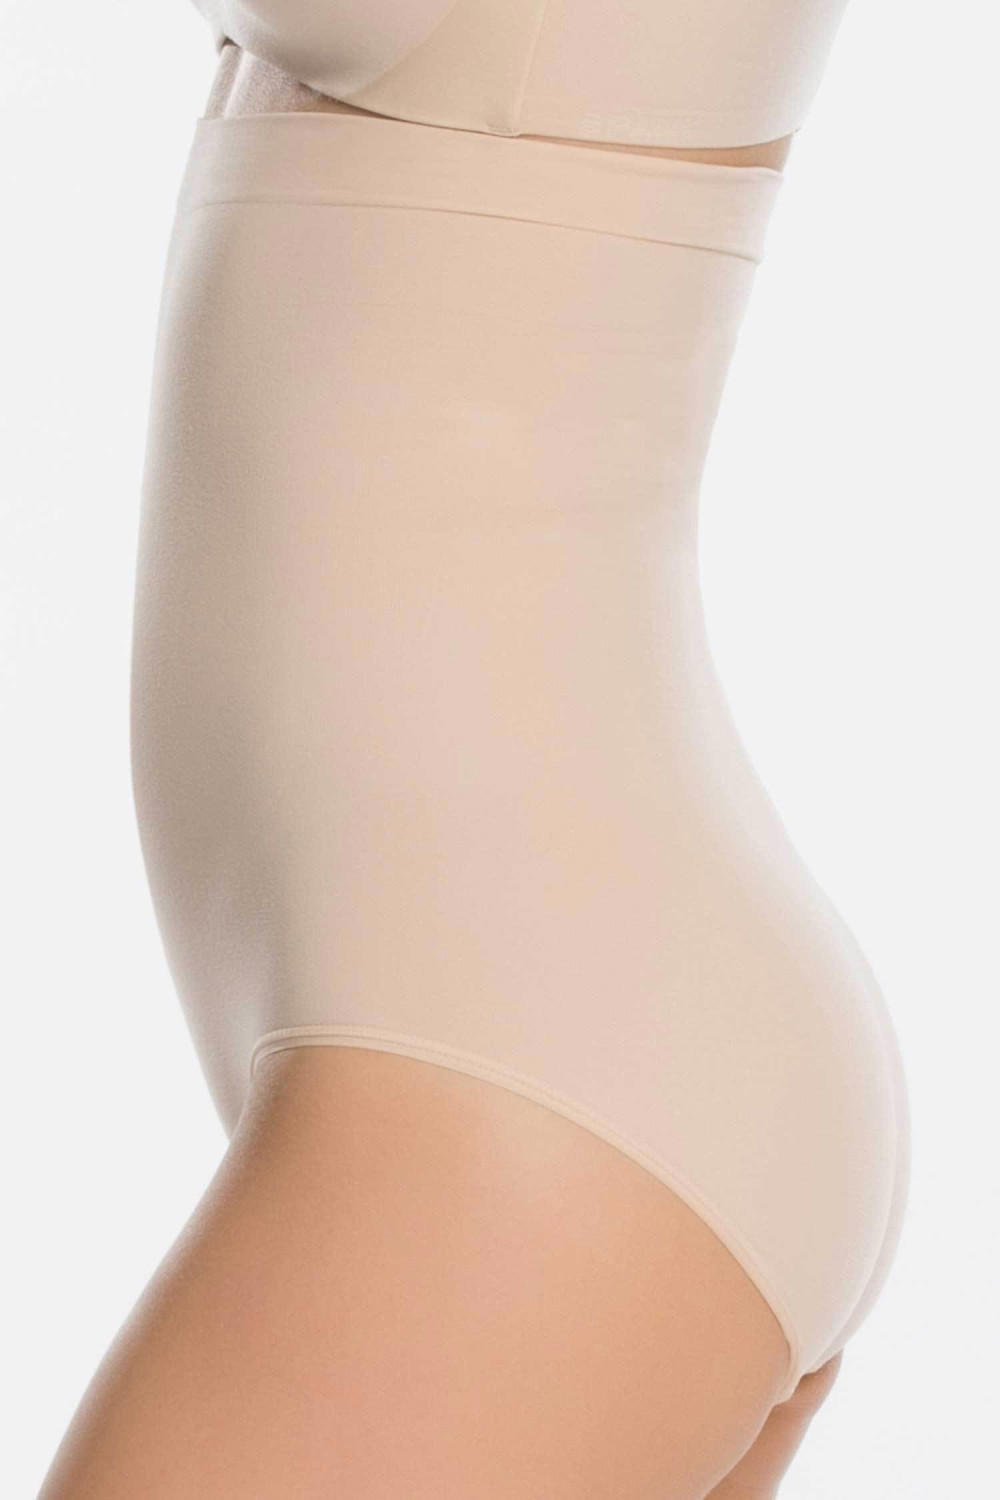 Spanx Higher Power Panties (2746) soft nude